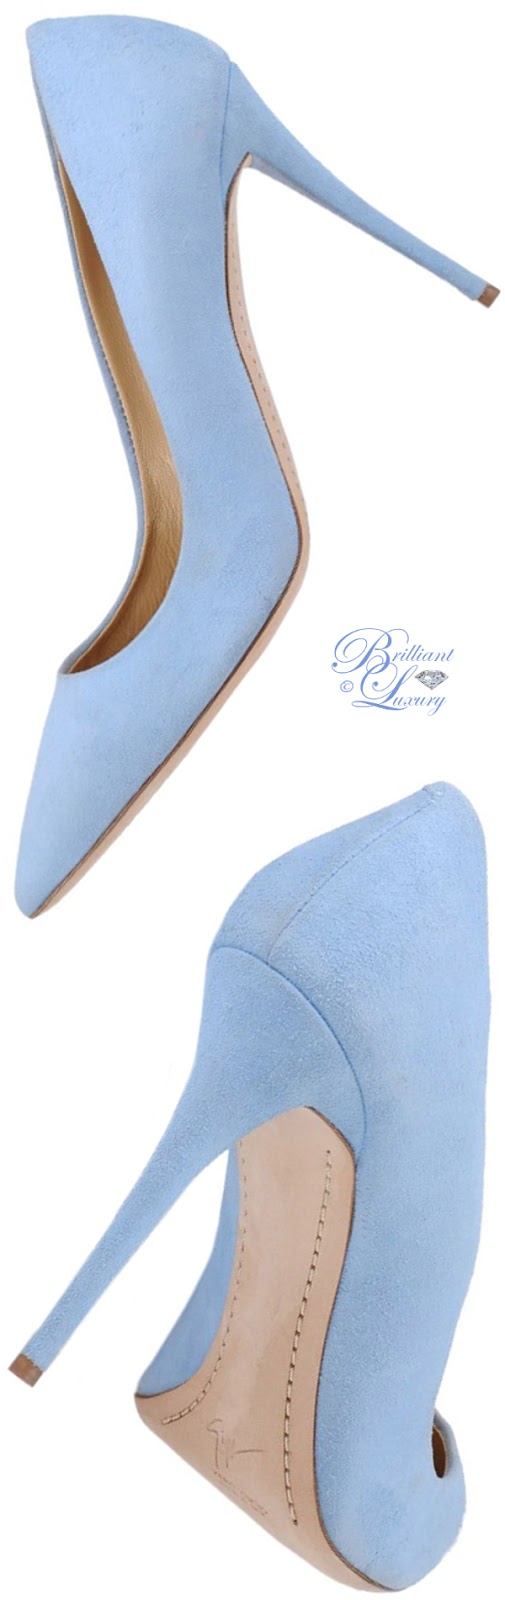 Brilliant Luxury: ♦Pantone Fashion Color ~ Little Boy Blue